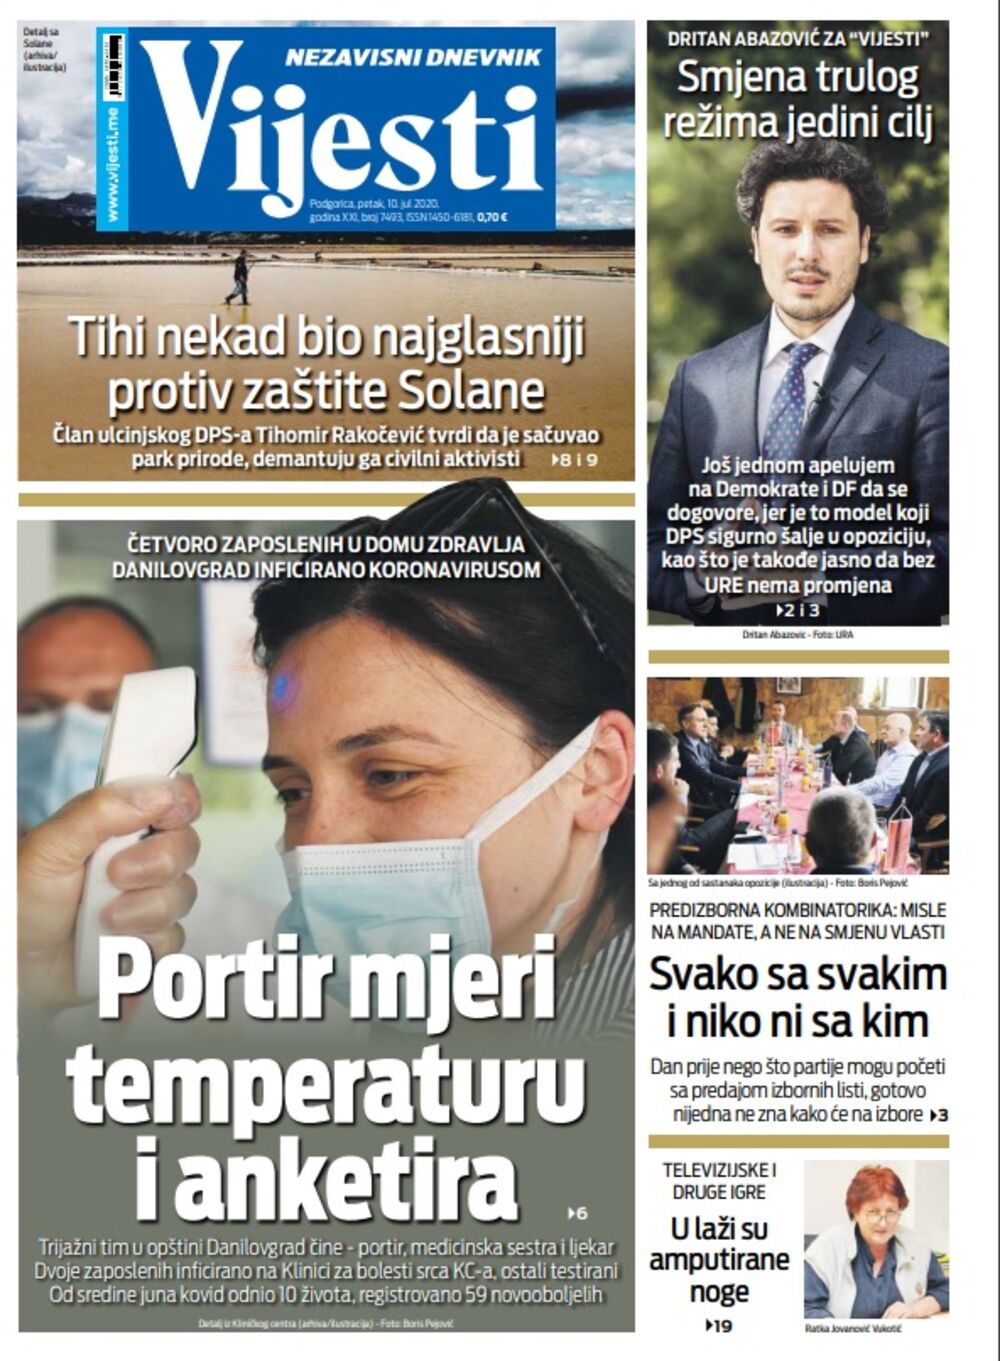 Naslovna strana "Vijesti" za petak 10. jul 2020. godine, Foto: Vijesti